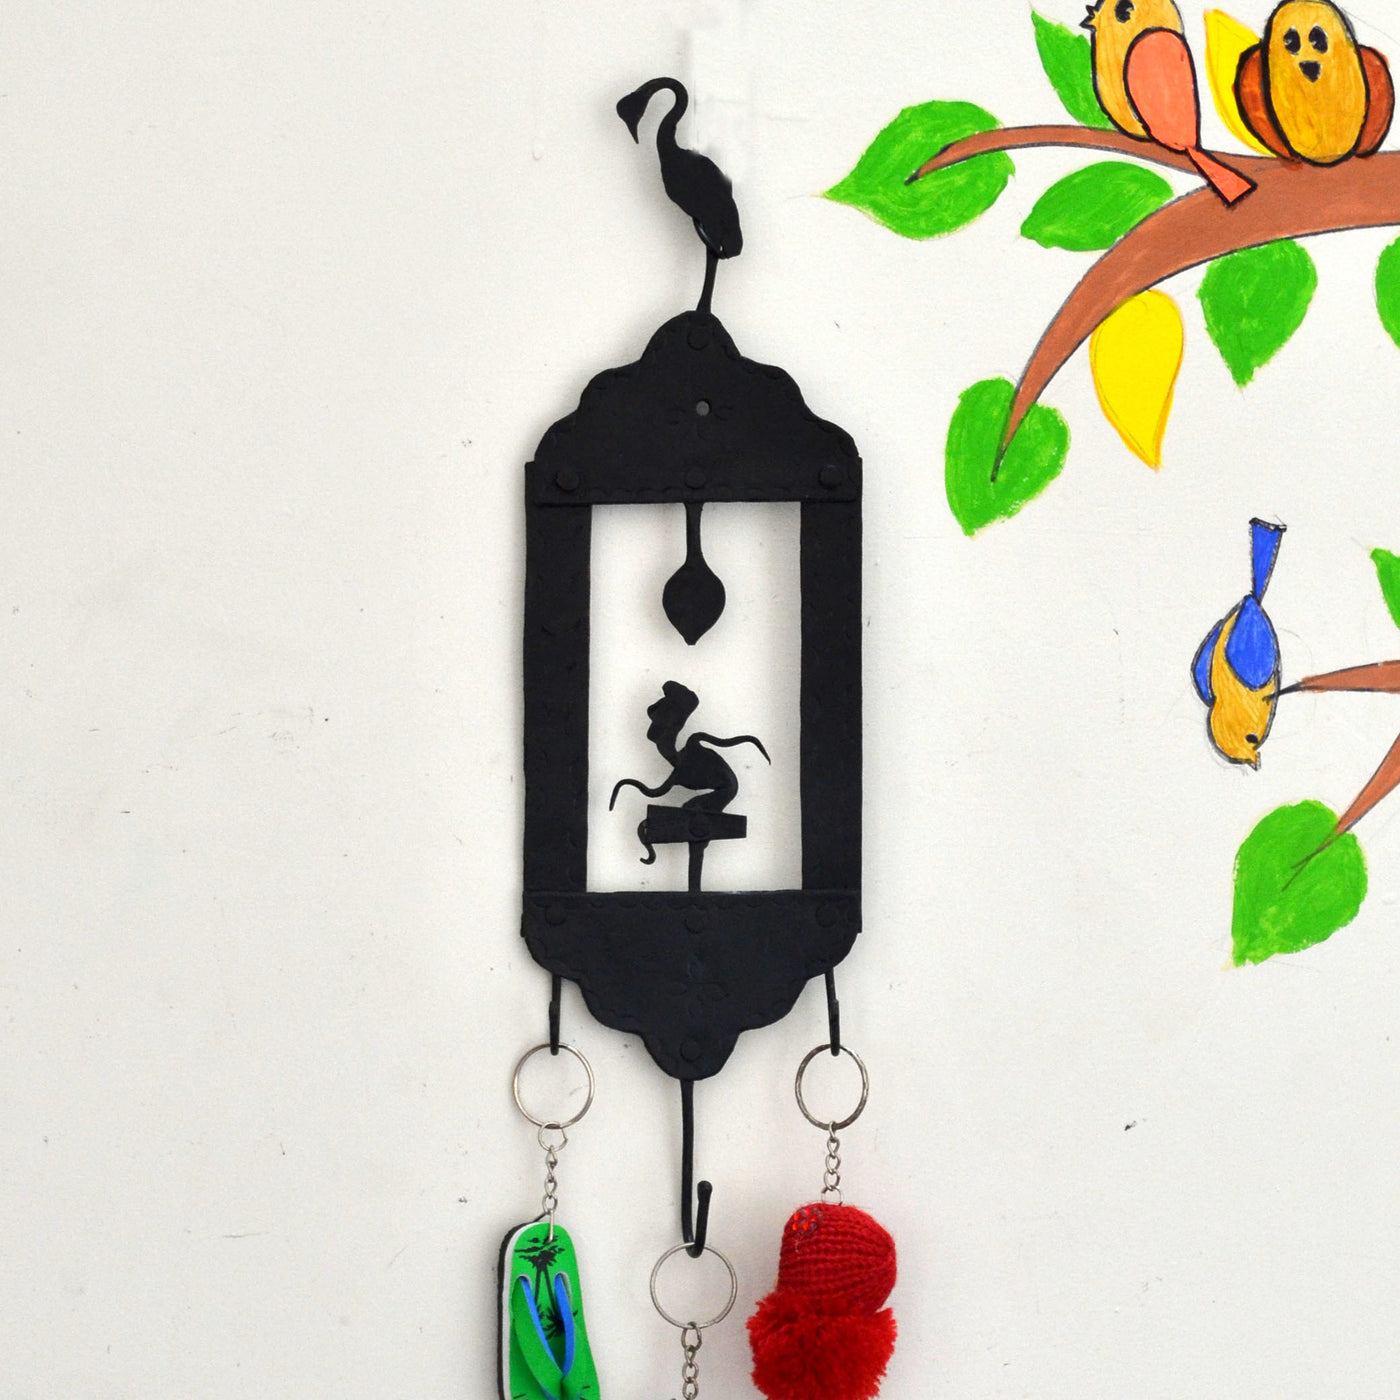 Chinhhari arts Wrought Iron Key Chain Holder - Chinhhari Arts store